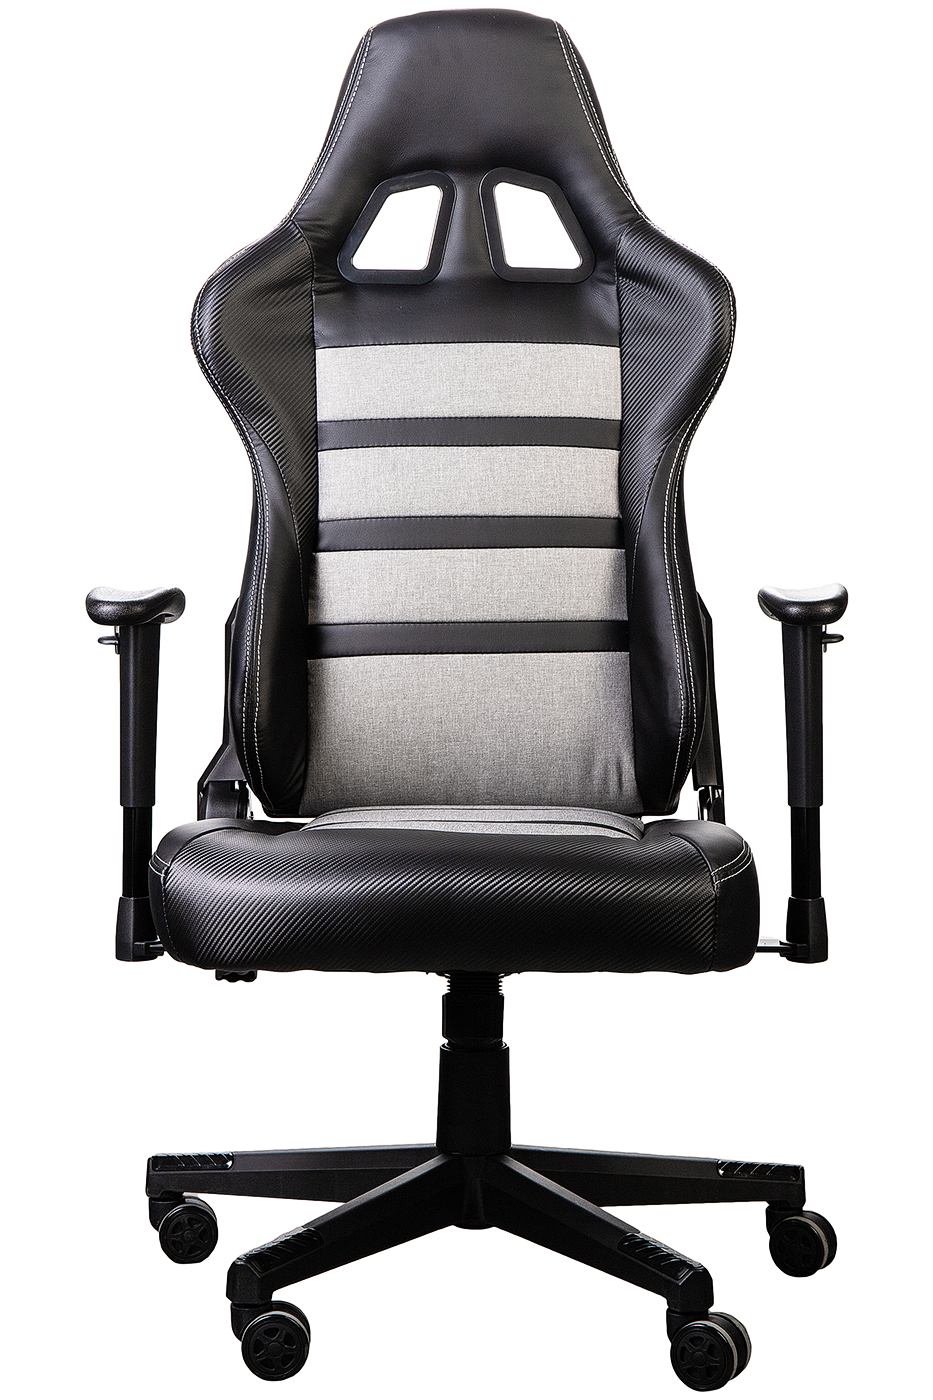 Кресло Sentore Sentore Hl-3120, размер 53х54, цвет черный